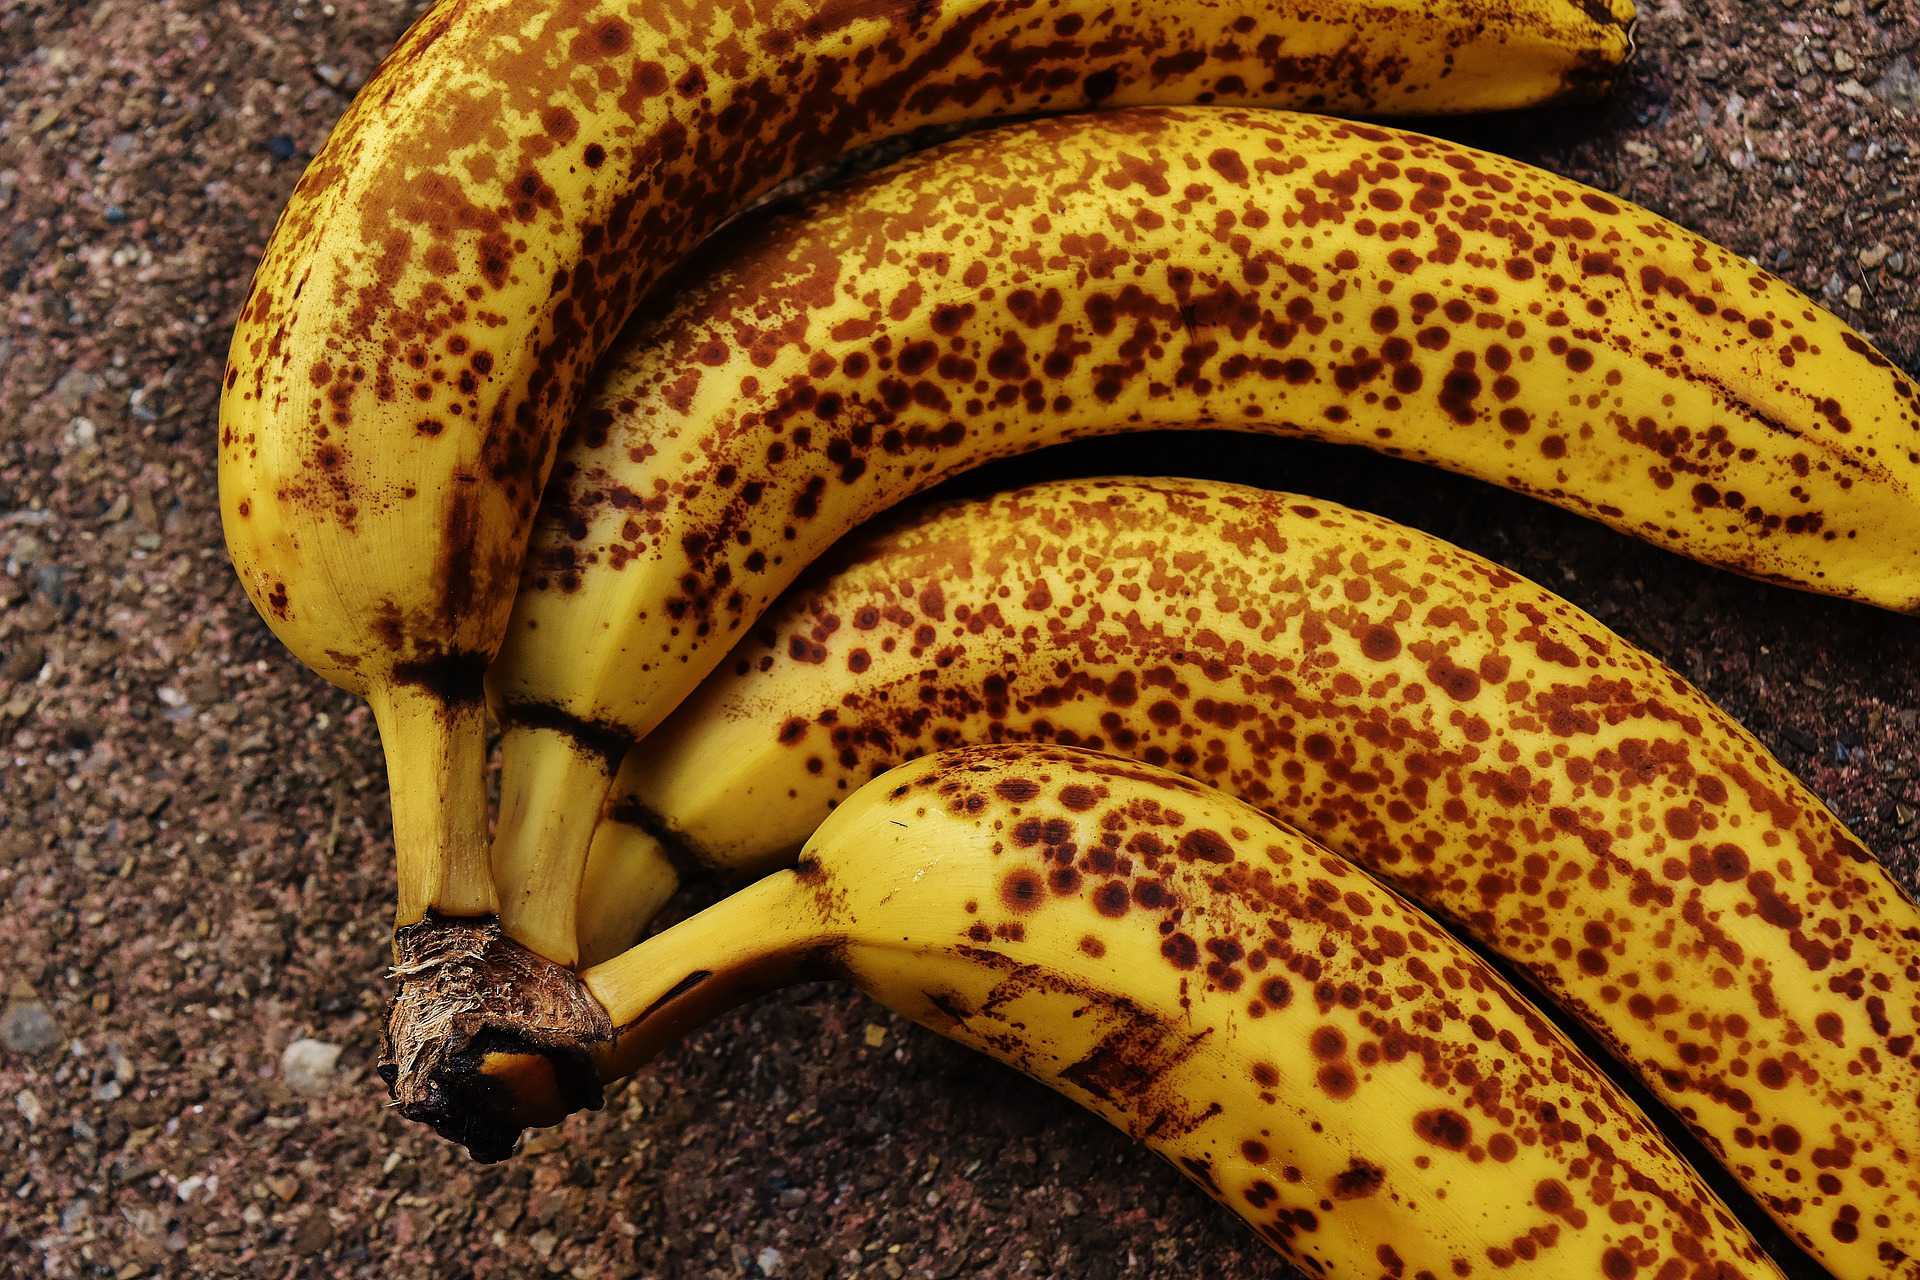 overripe bananas